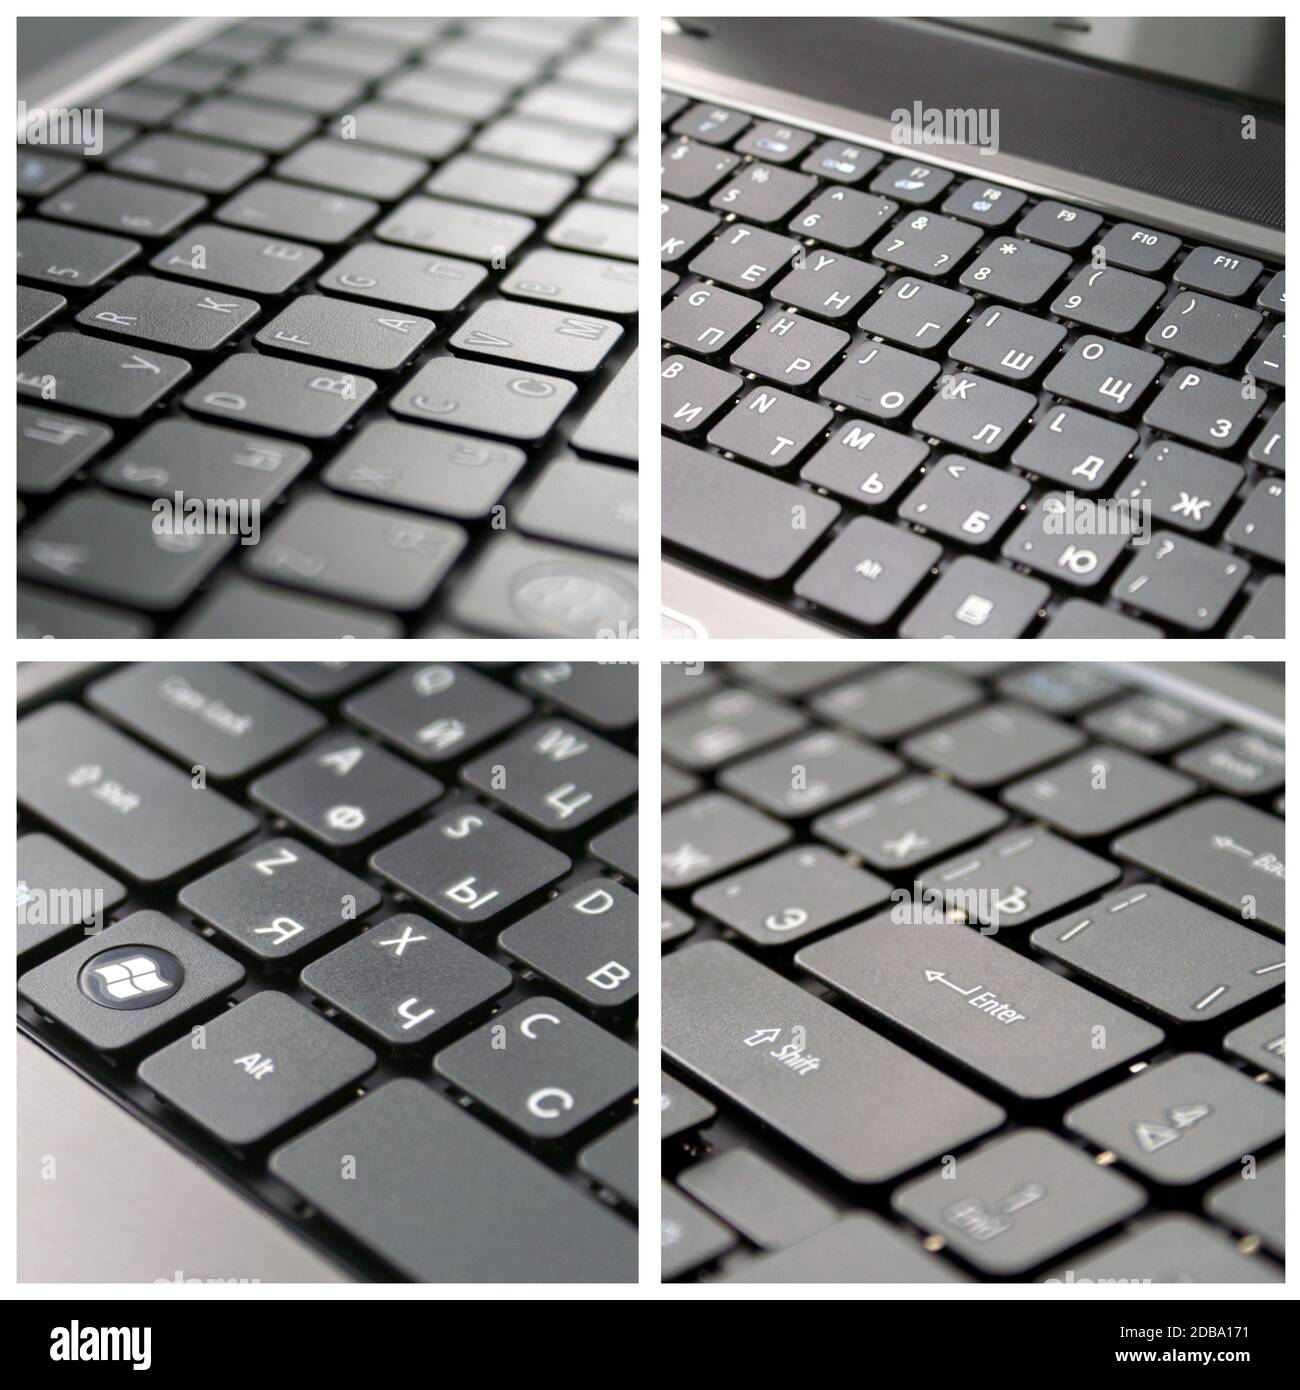 Saubere neue graue Laptop mit russischer Tastatur Stockfotografie - Alamy